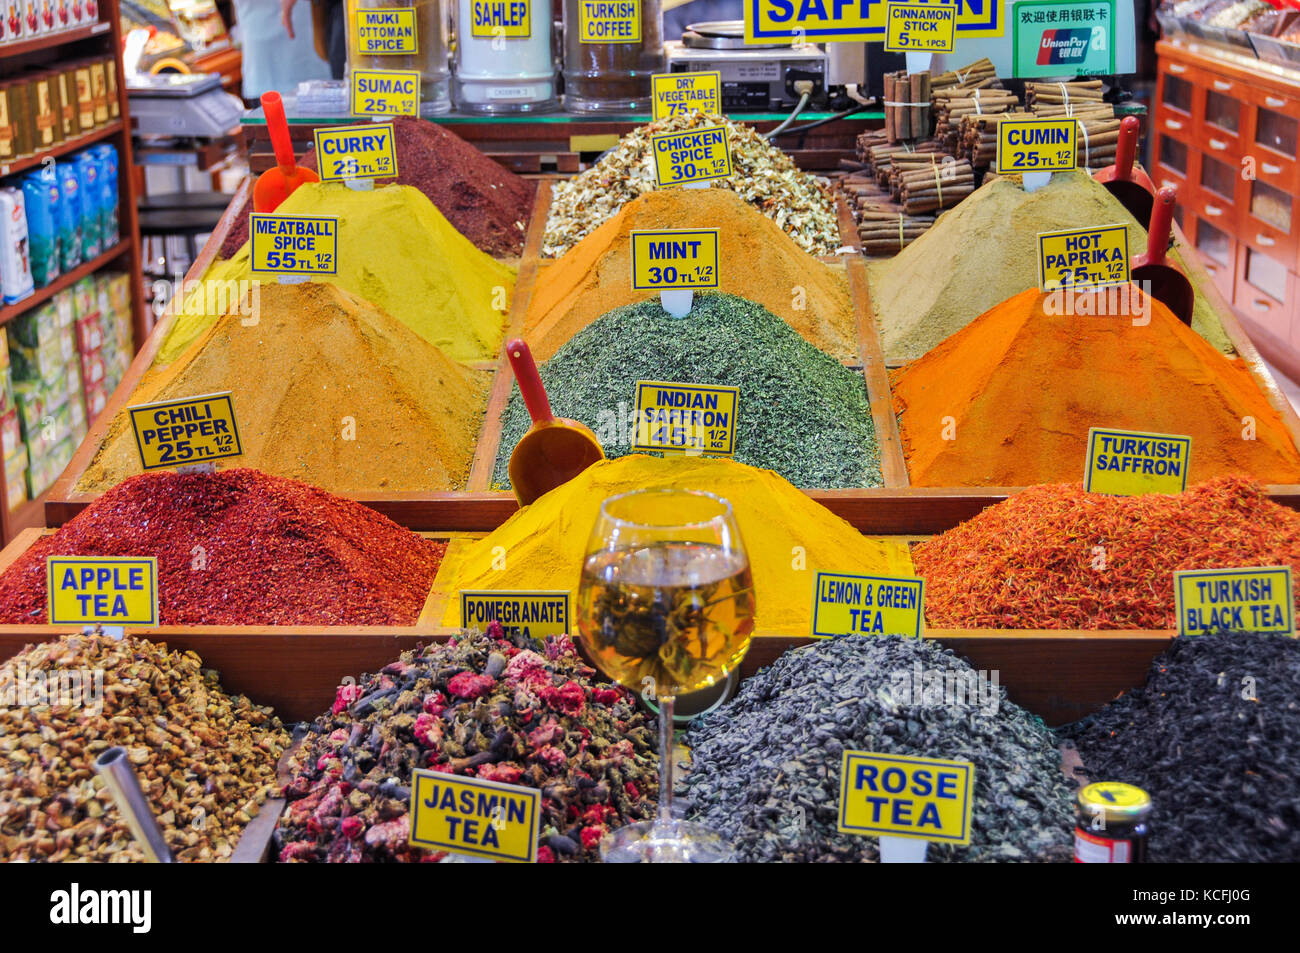 spices at Mısır Çarşısı, Egyptian Bazaar, Istanbul, Turkey Stock Photo